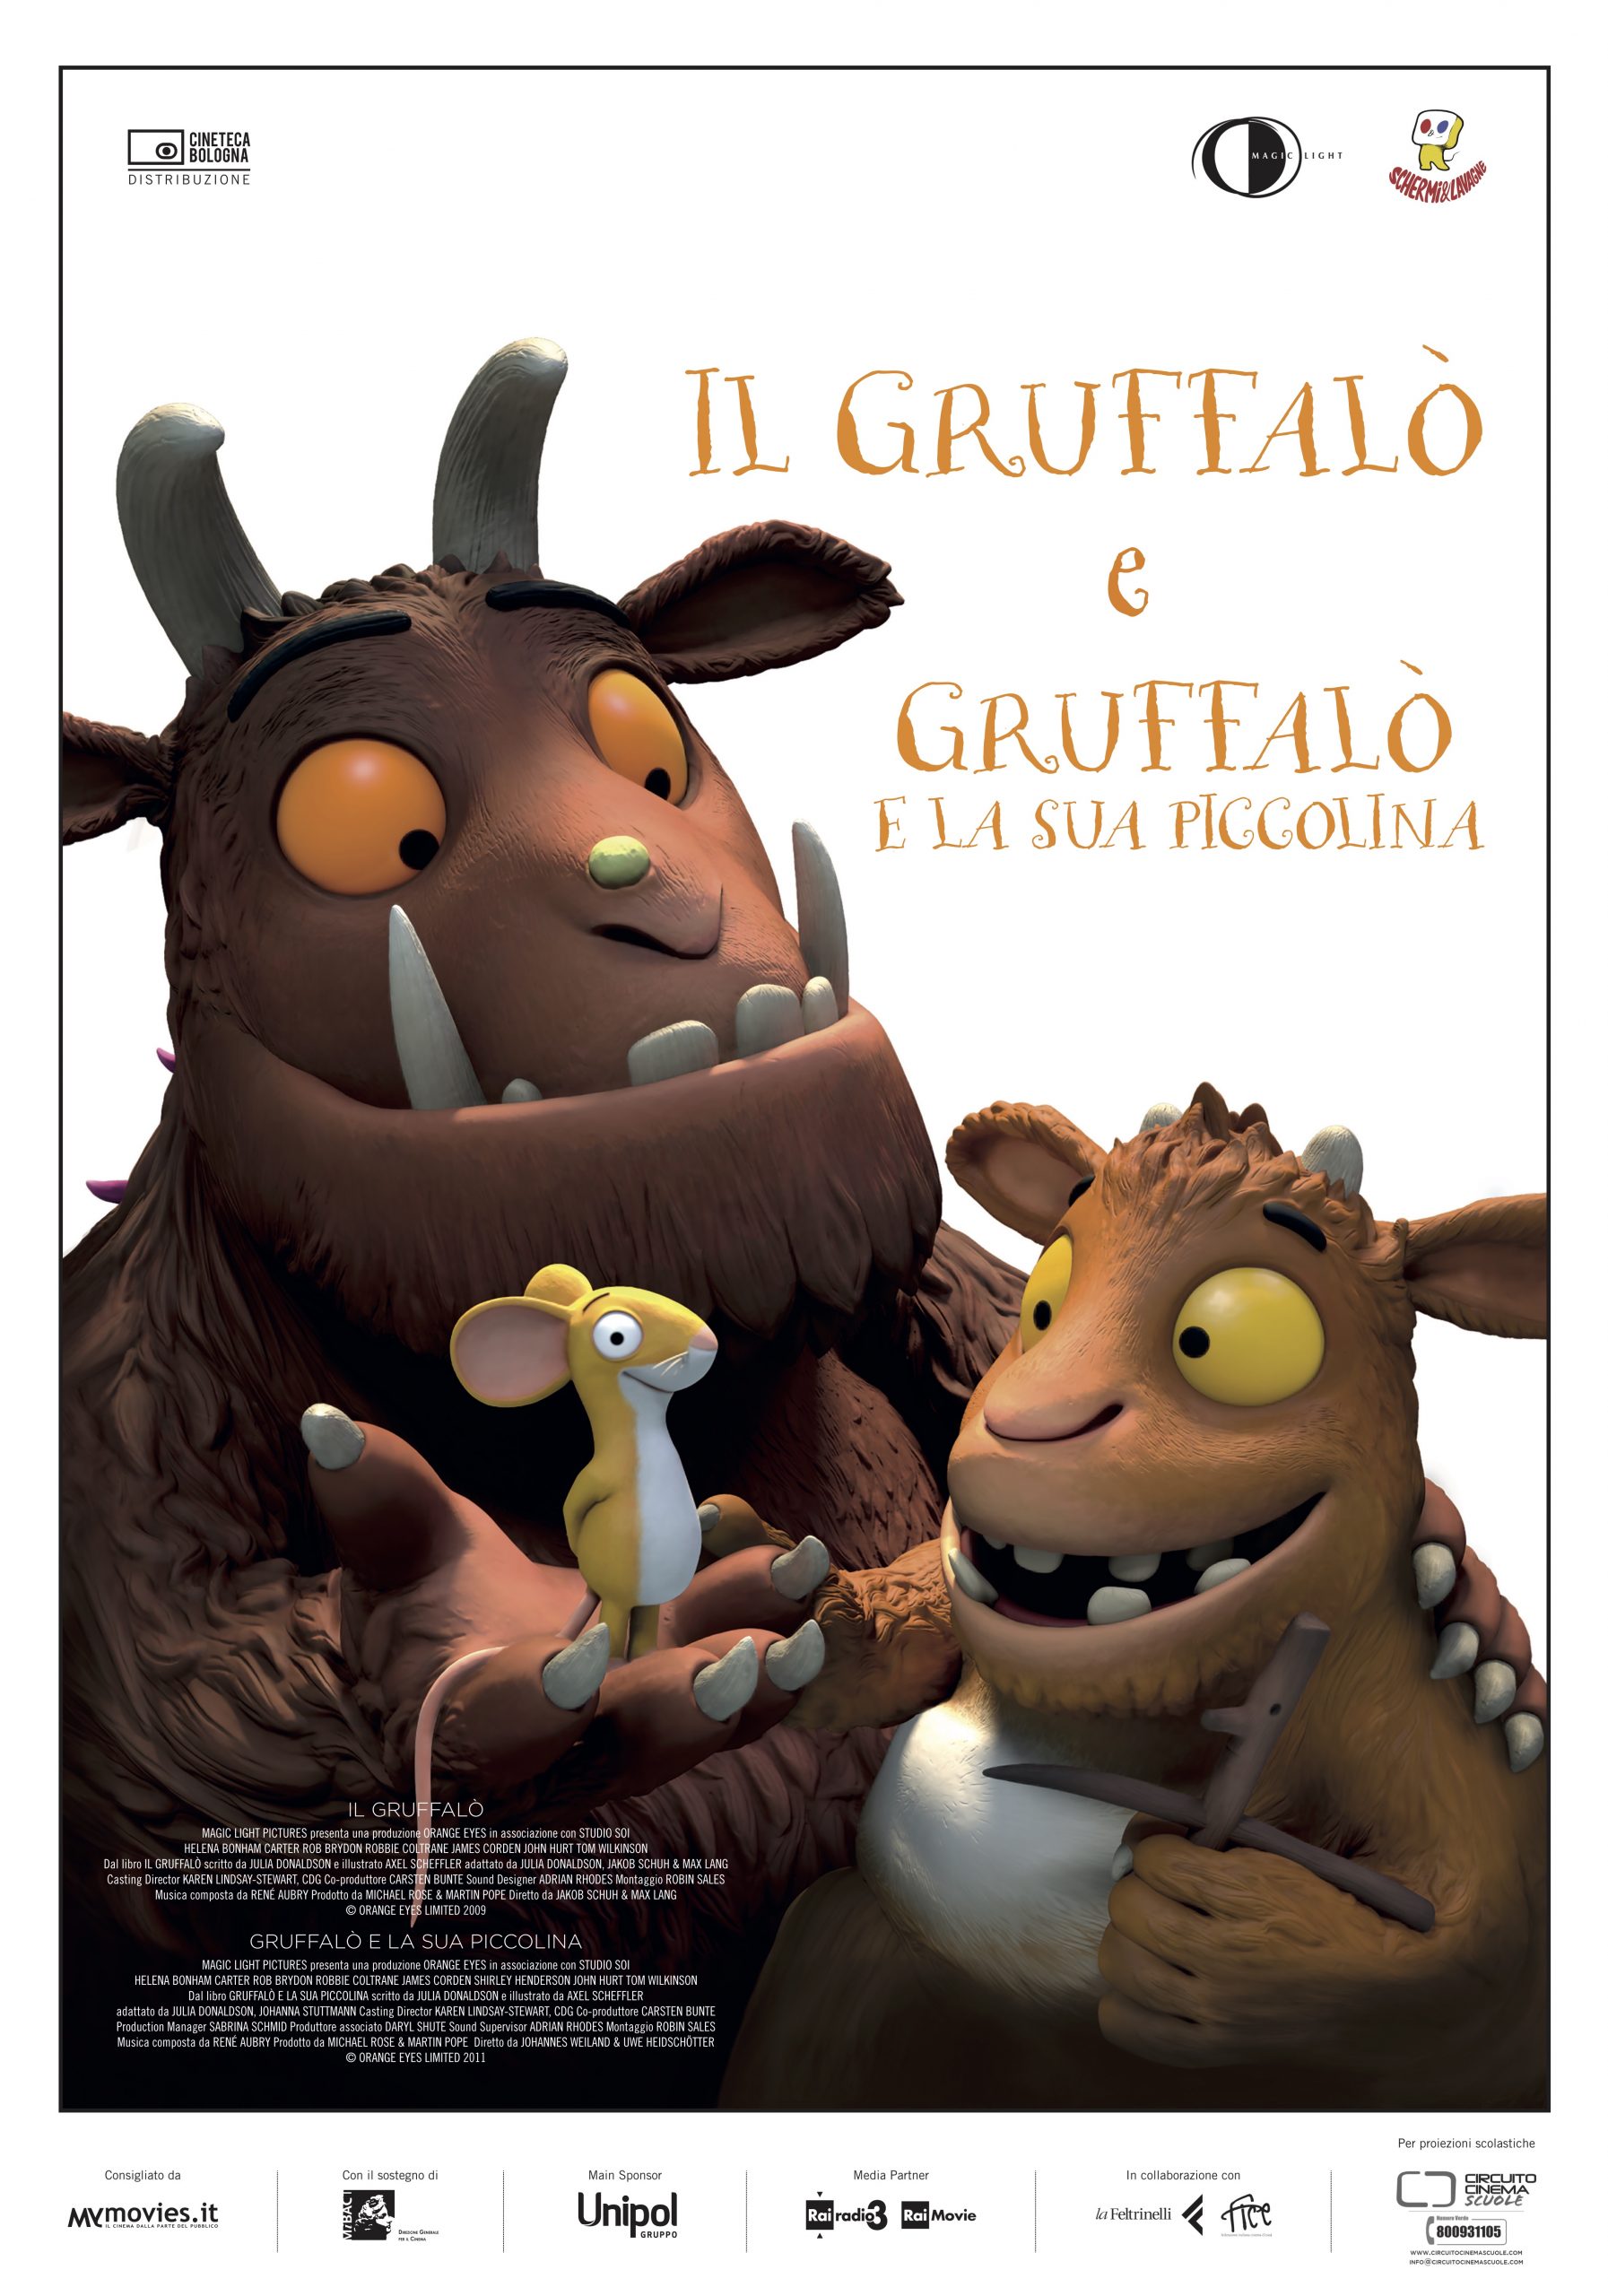 Versiliana Cinema: Il Gruffalò e Il Gruffalò e la sua piccolina